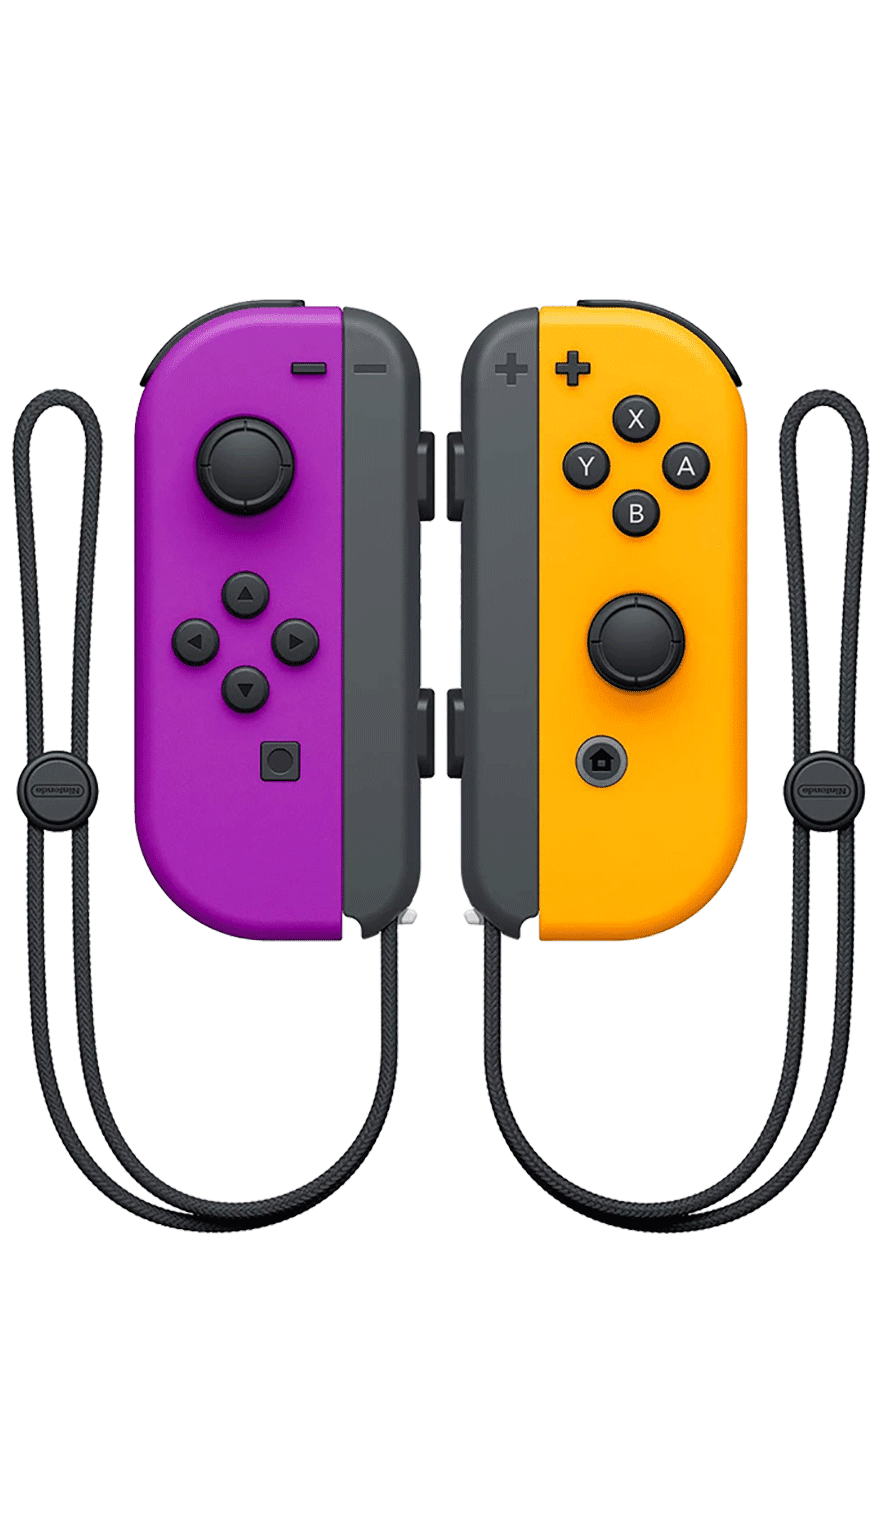 Nintendo Controller pair joy-con